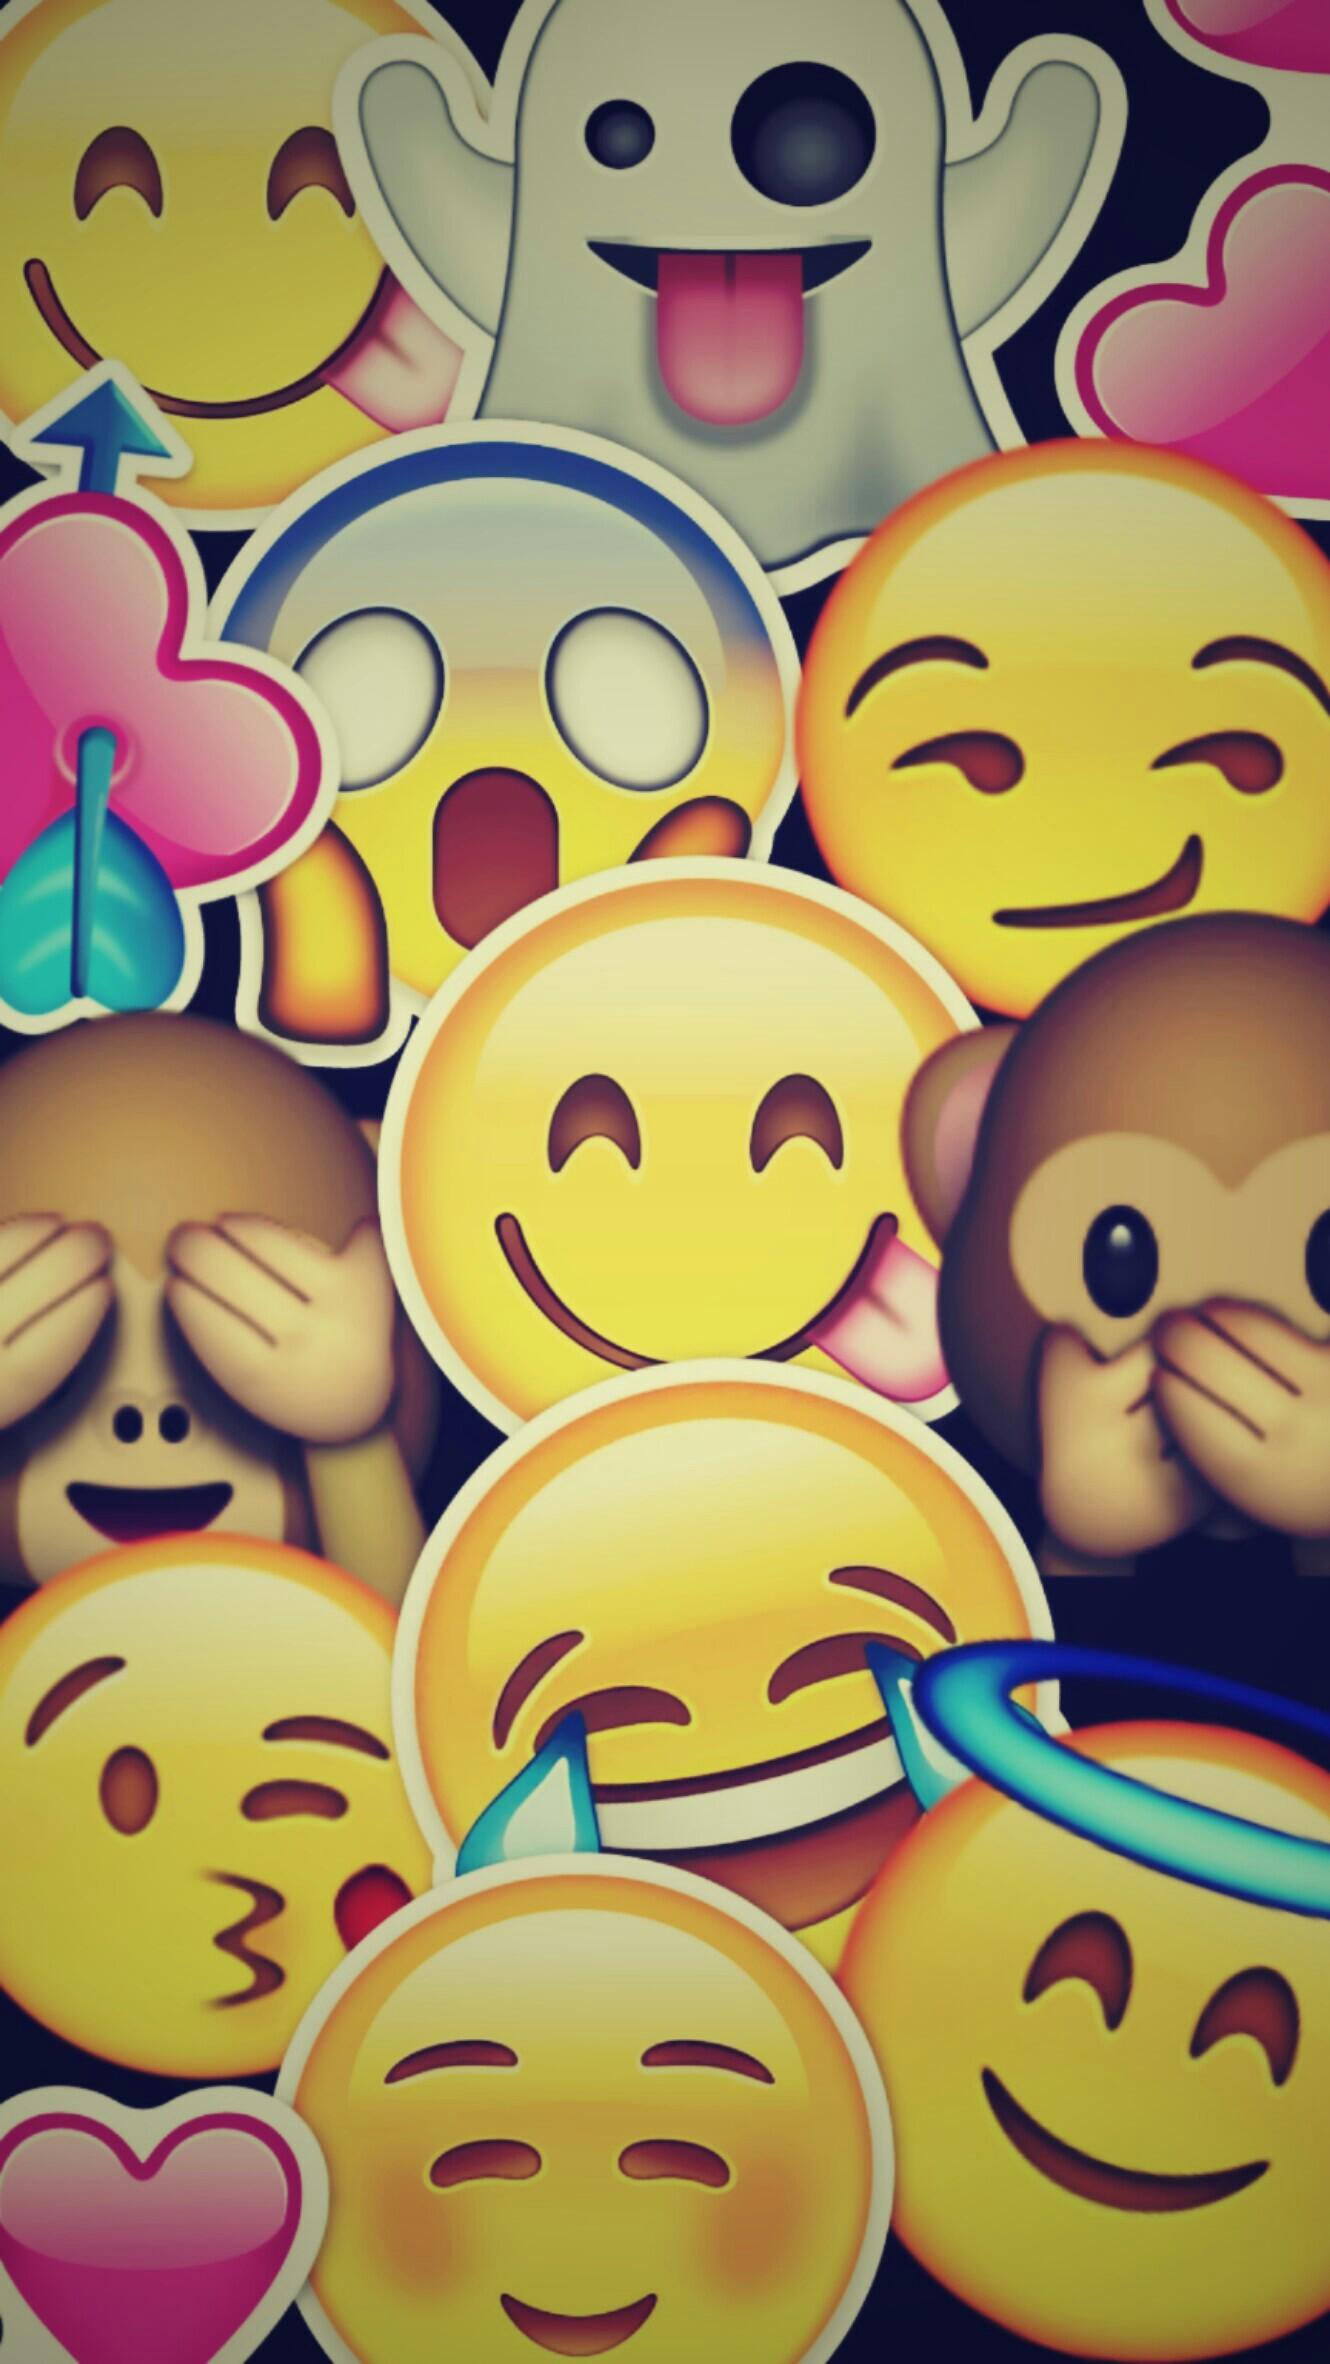  Queen Emoji Wallpapers  Wallpaper  Cave